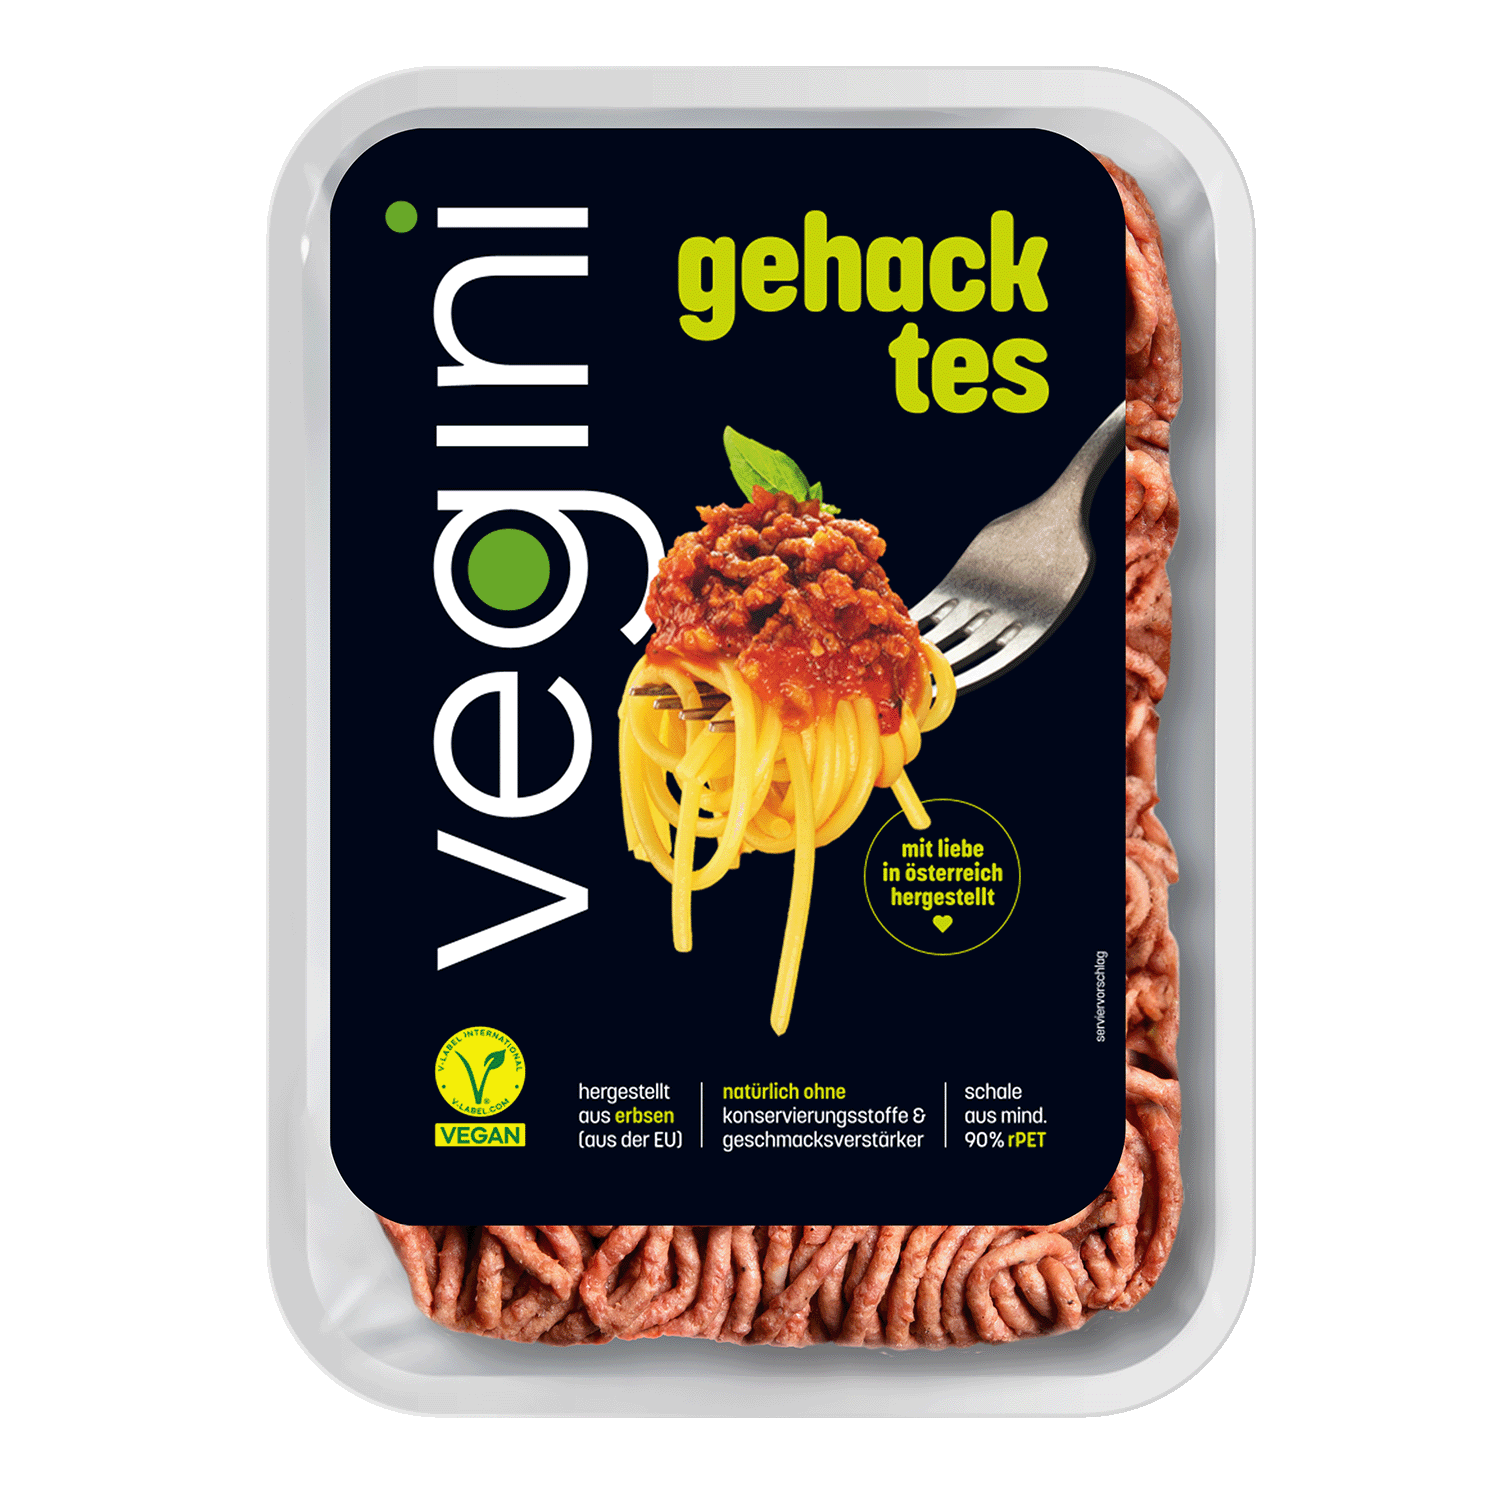 Veganes Gehacktes, 200g